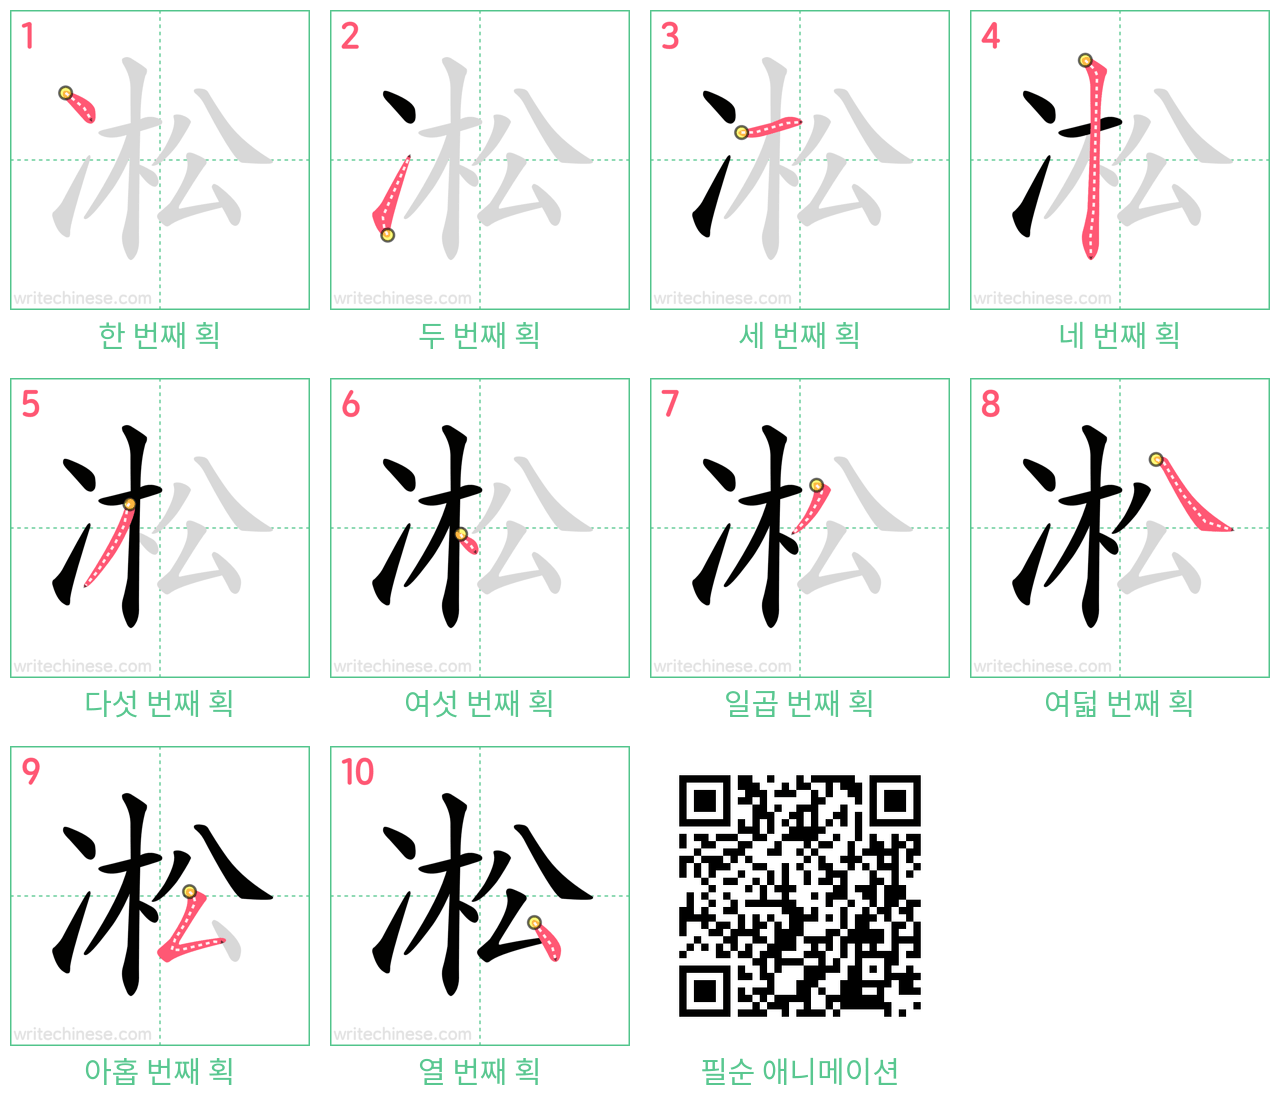 凇 step-by-step stroke order diagrams